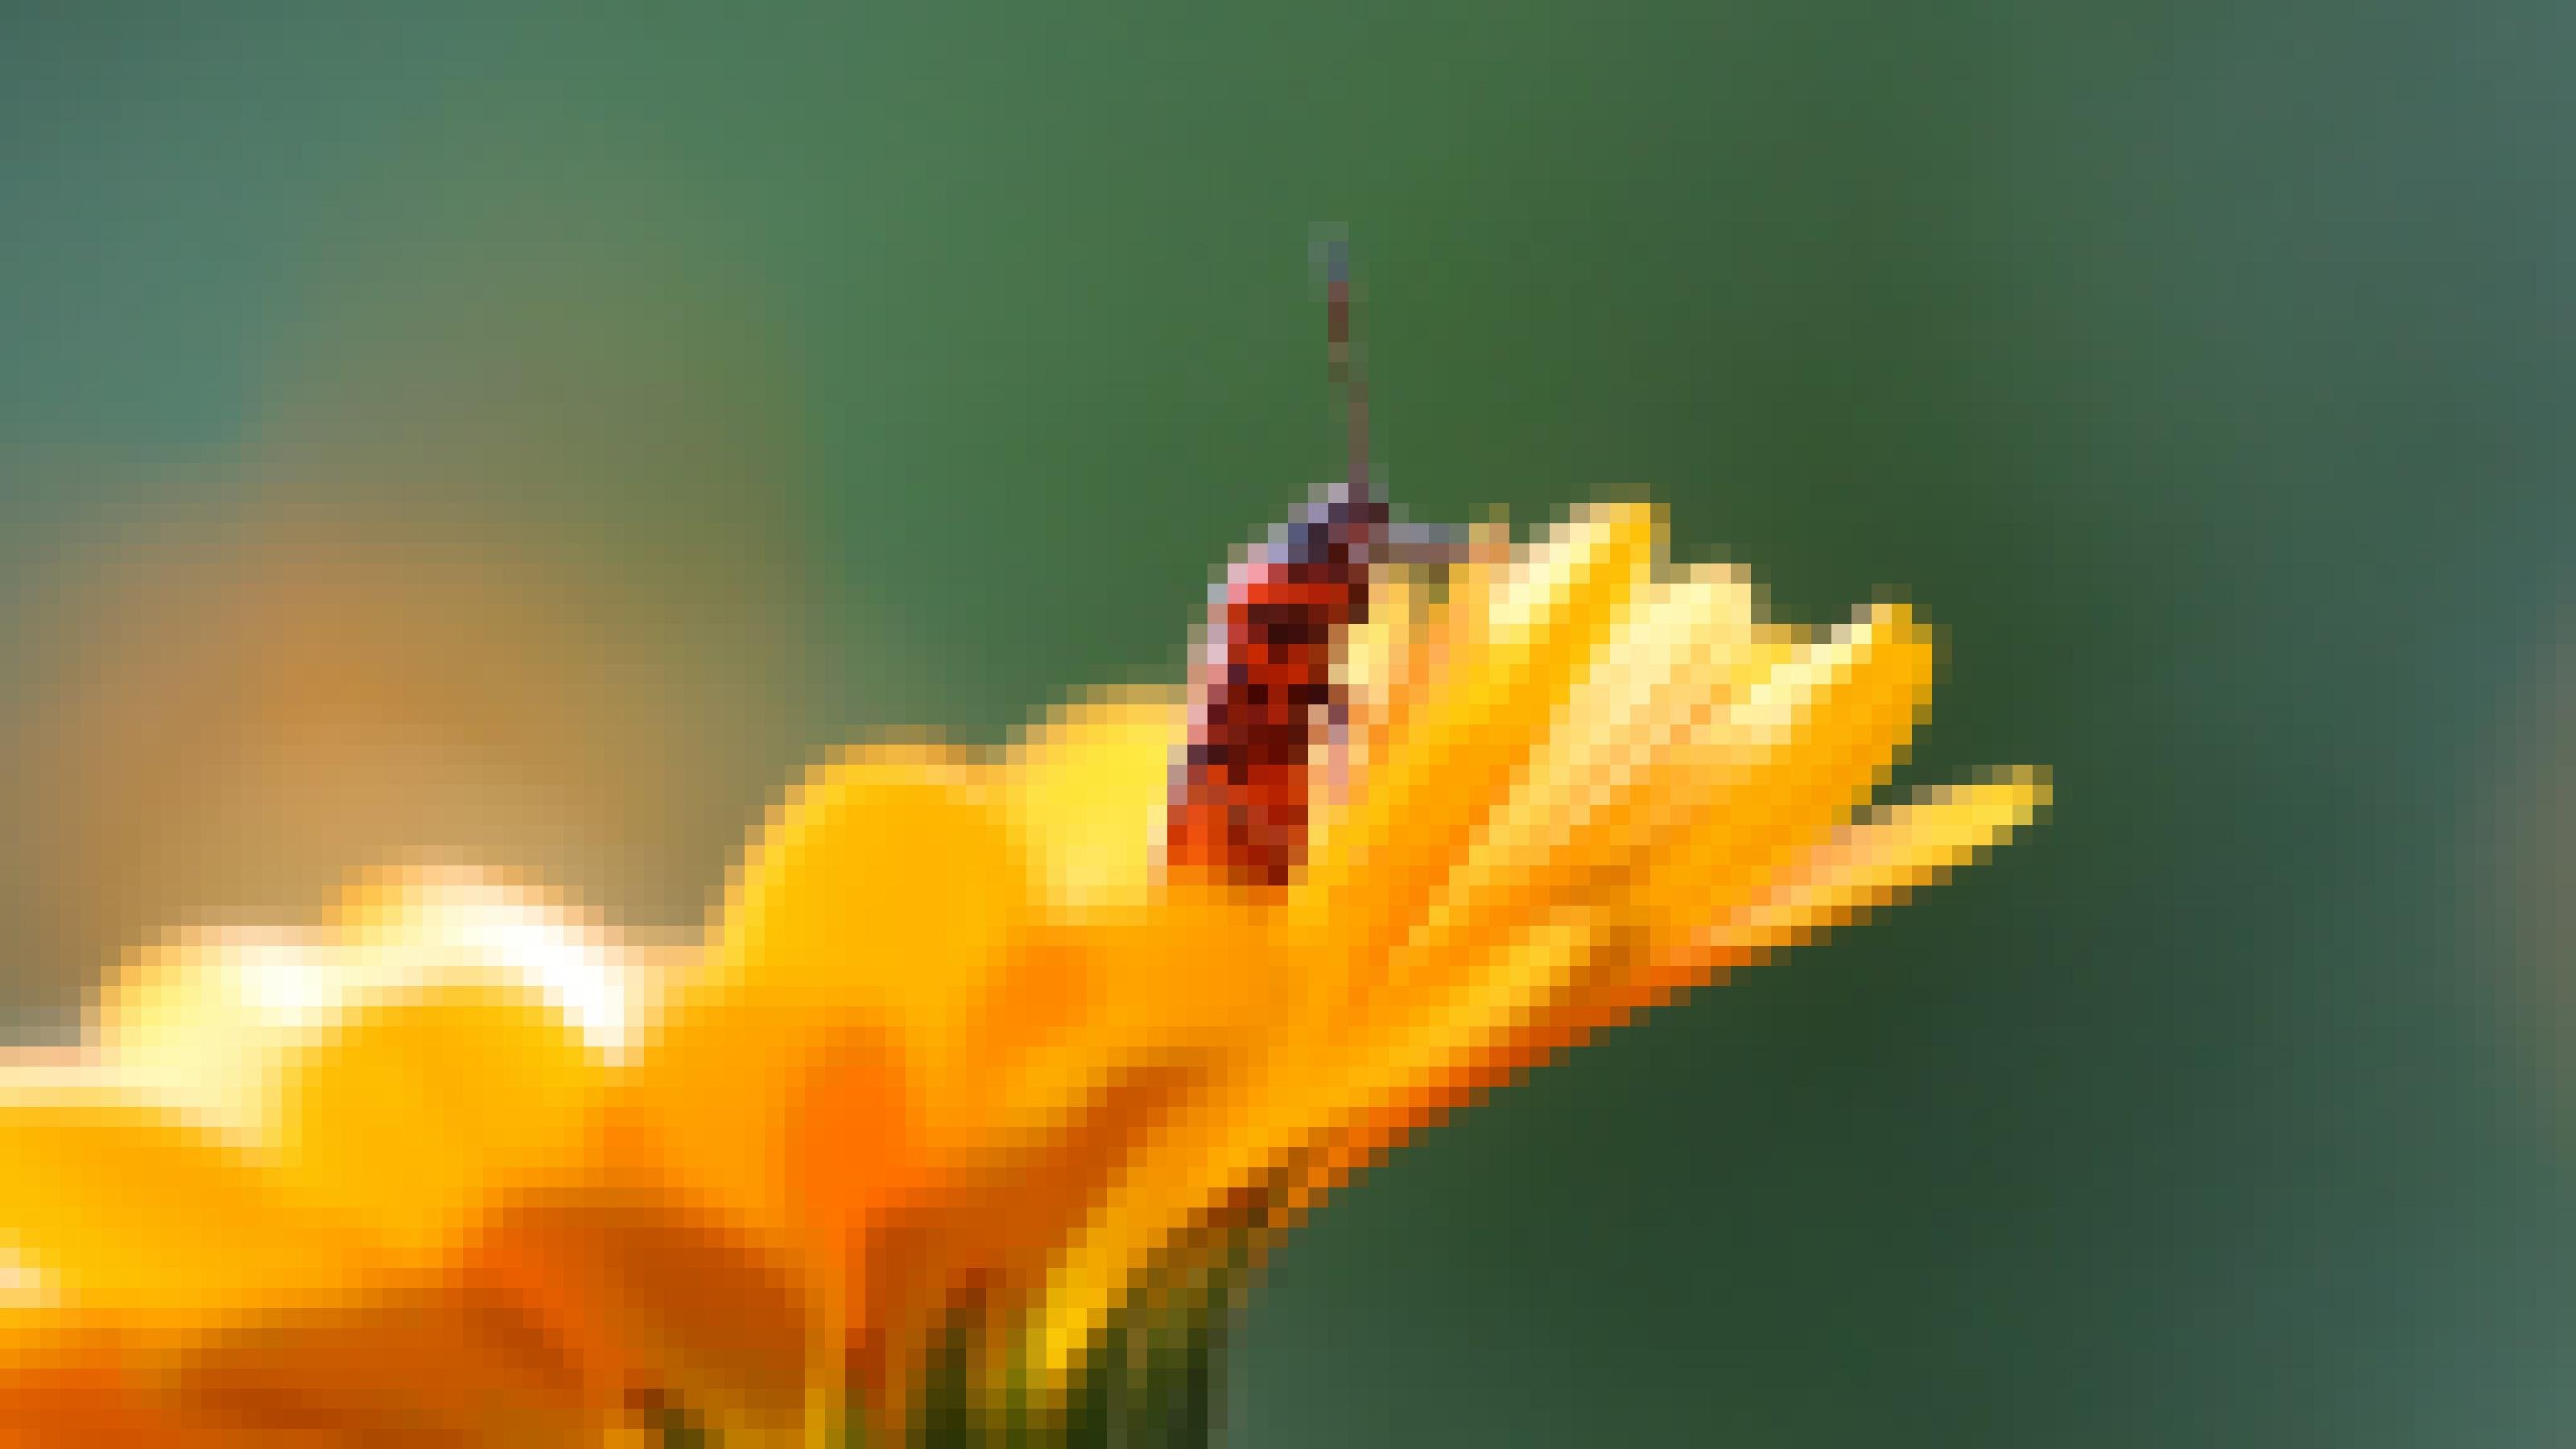 Ein rot-schwarz gezeichnetes Insekt sitzt auf einer orangefarbenen Blüte